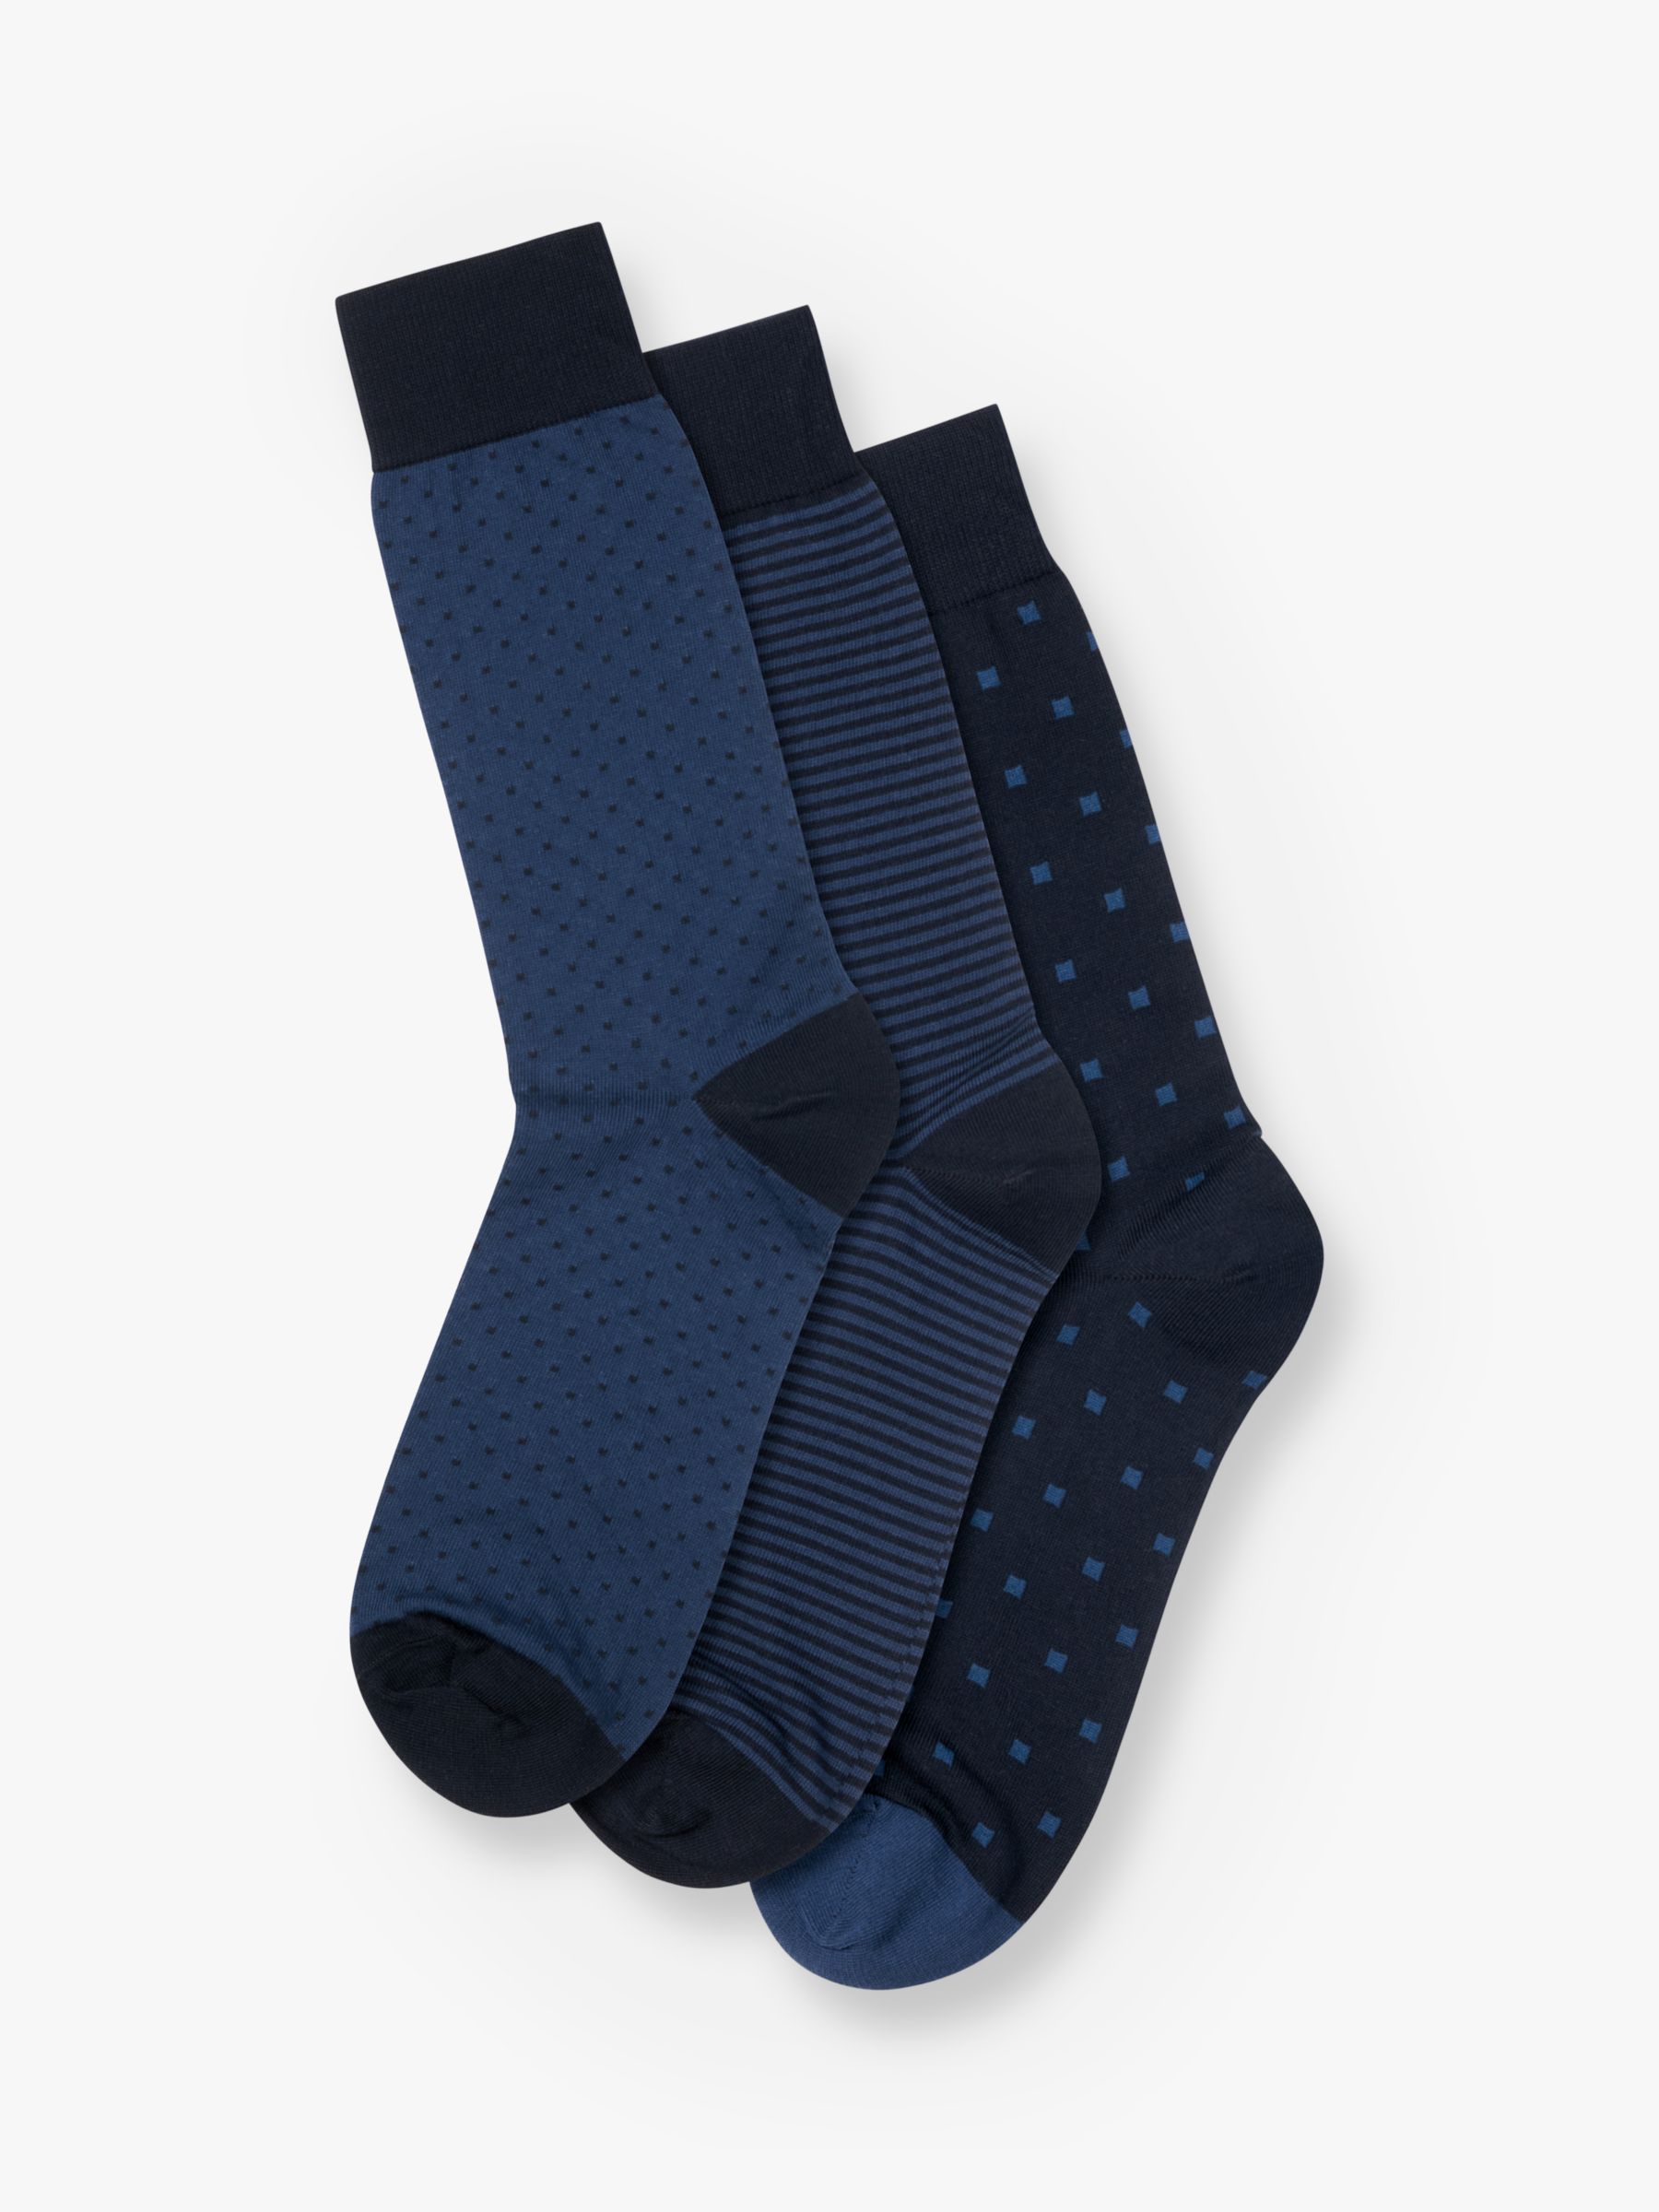 Charles Tyrwhitt Cotton Rich Socks, Pack of 3, Navy/Multi, M